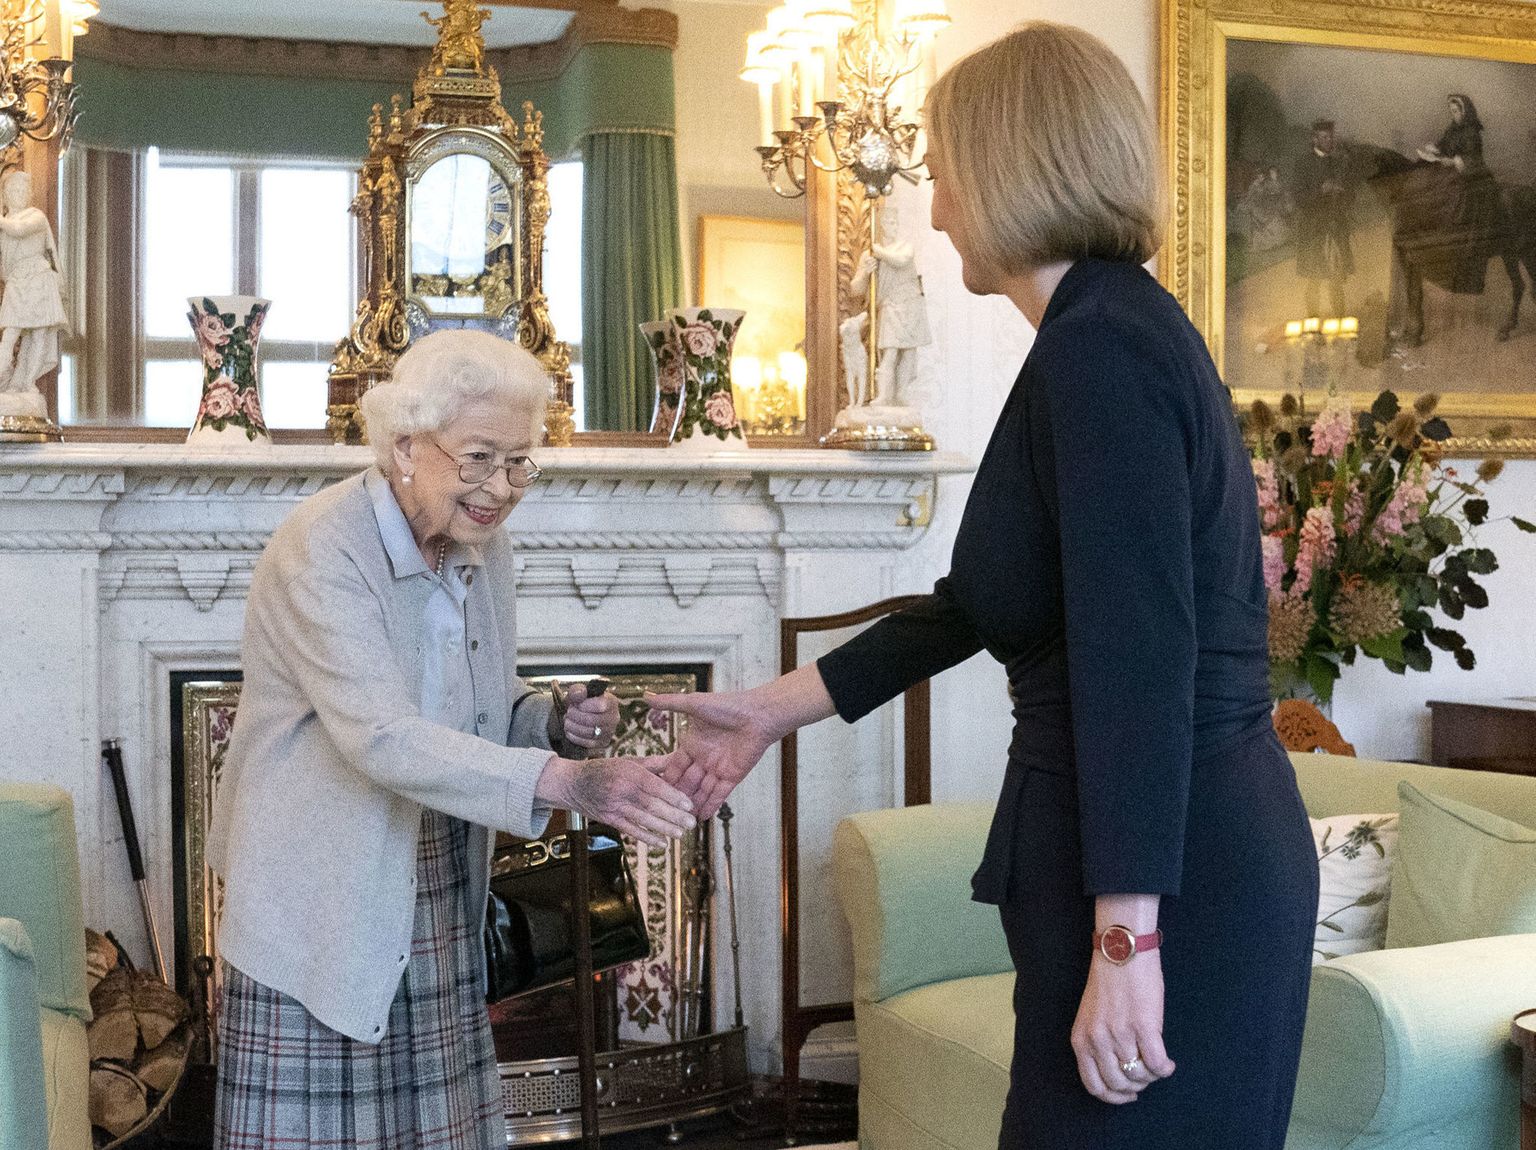 Briti kuninganna Elizabeth II ja Briti uus peaminister Liz Truss kohtusid 6. septembril 2022 Šotimaal Balmorali lossis. Elizabeth II suri 8. septembril 2022